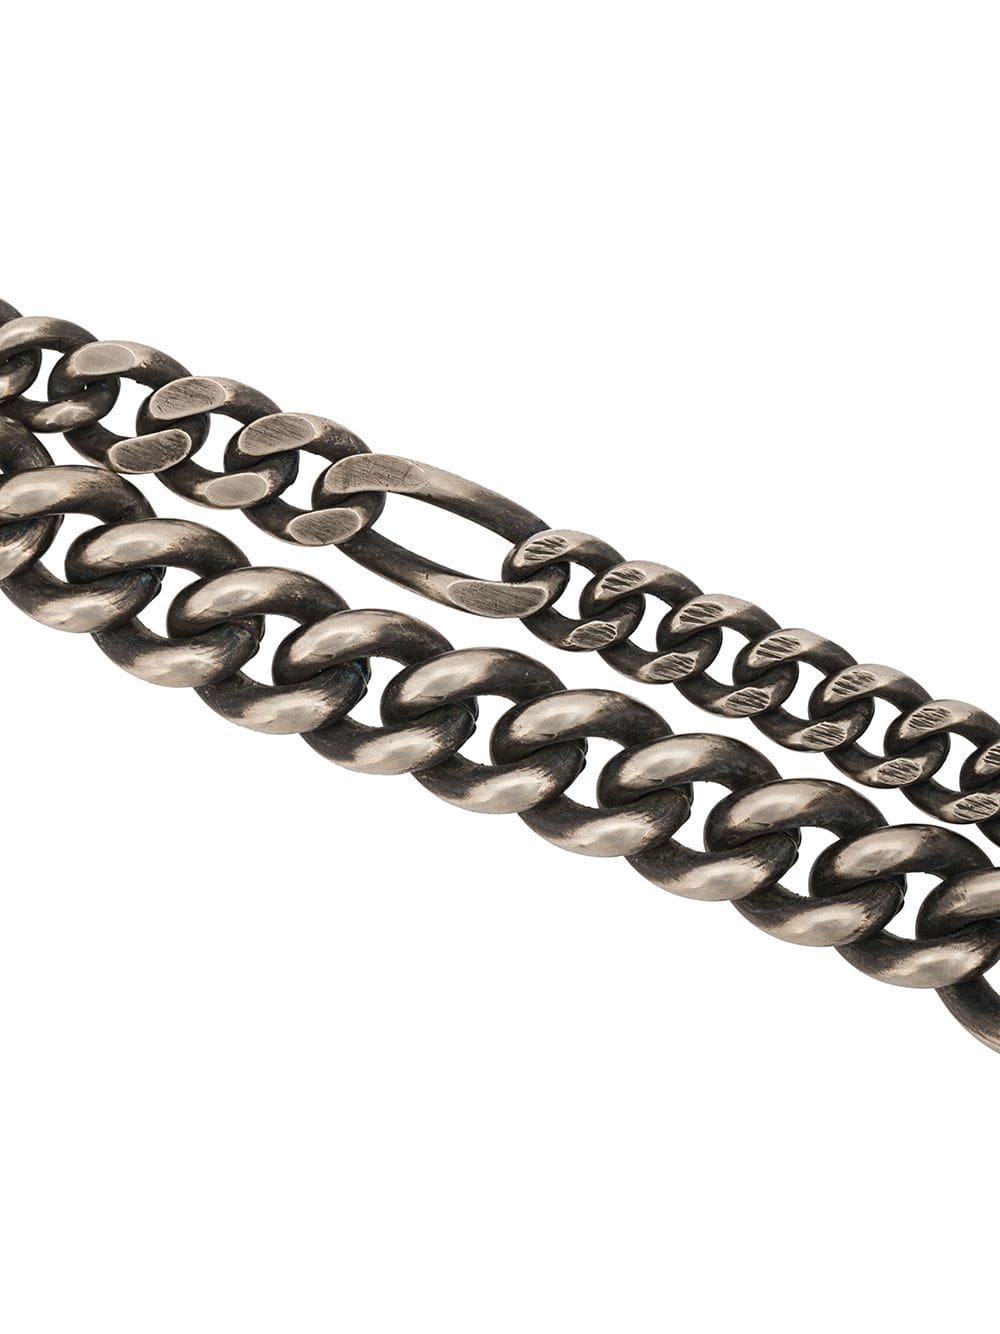 WERKSTATT MUNCHEN Bracelet Two Chains M2306